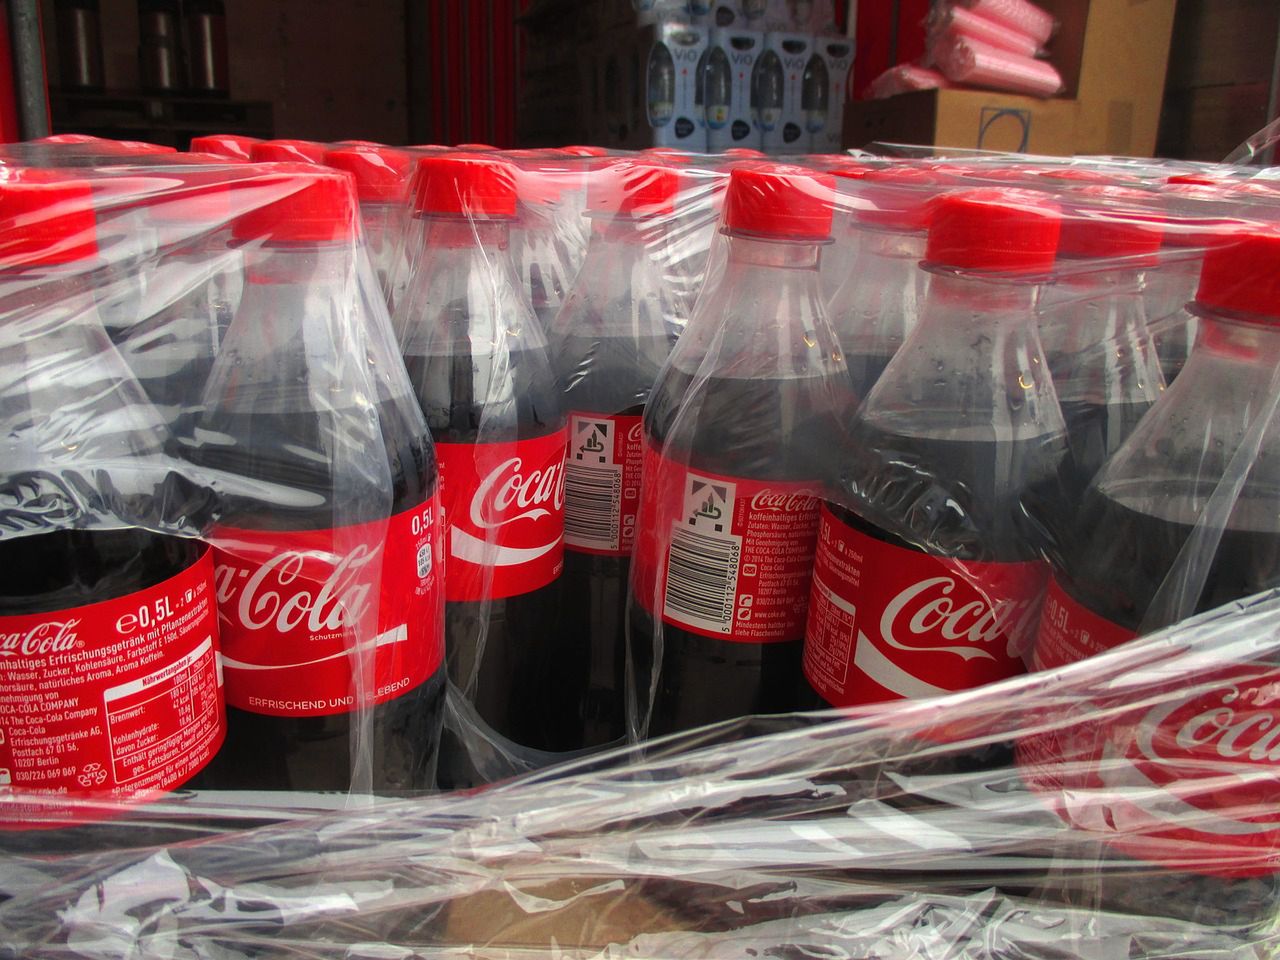 Trik z Coca-Colą może wykonać każdy. Fot. Pixabay